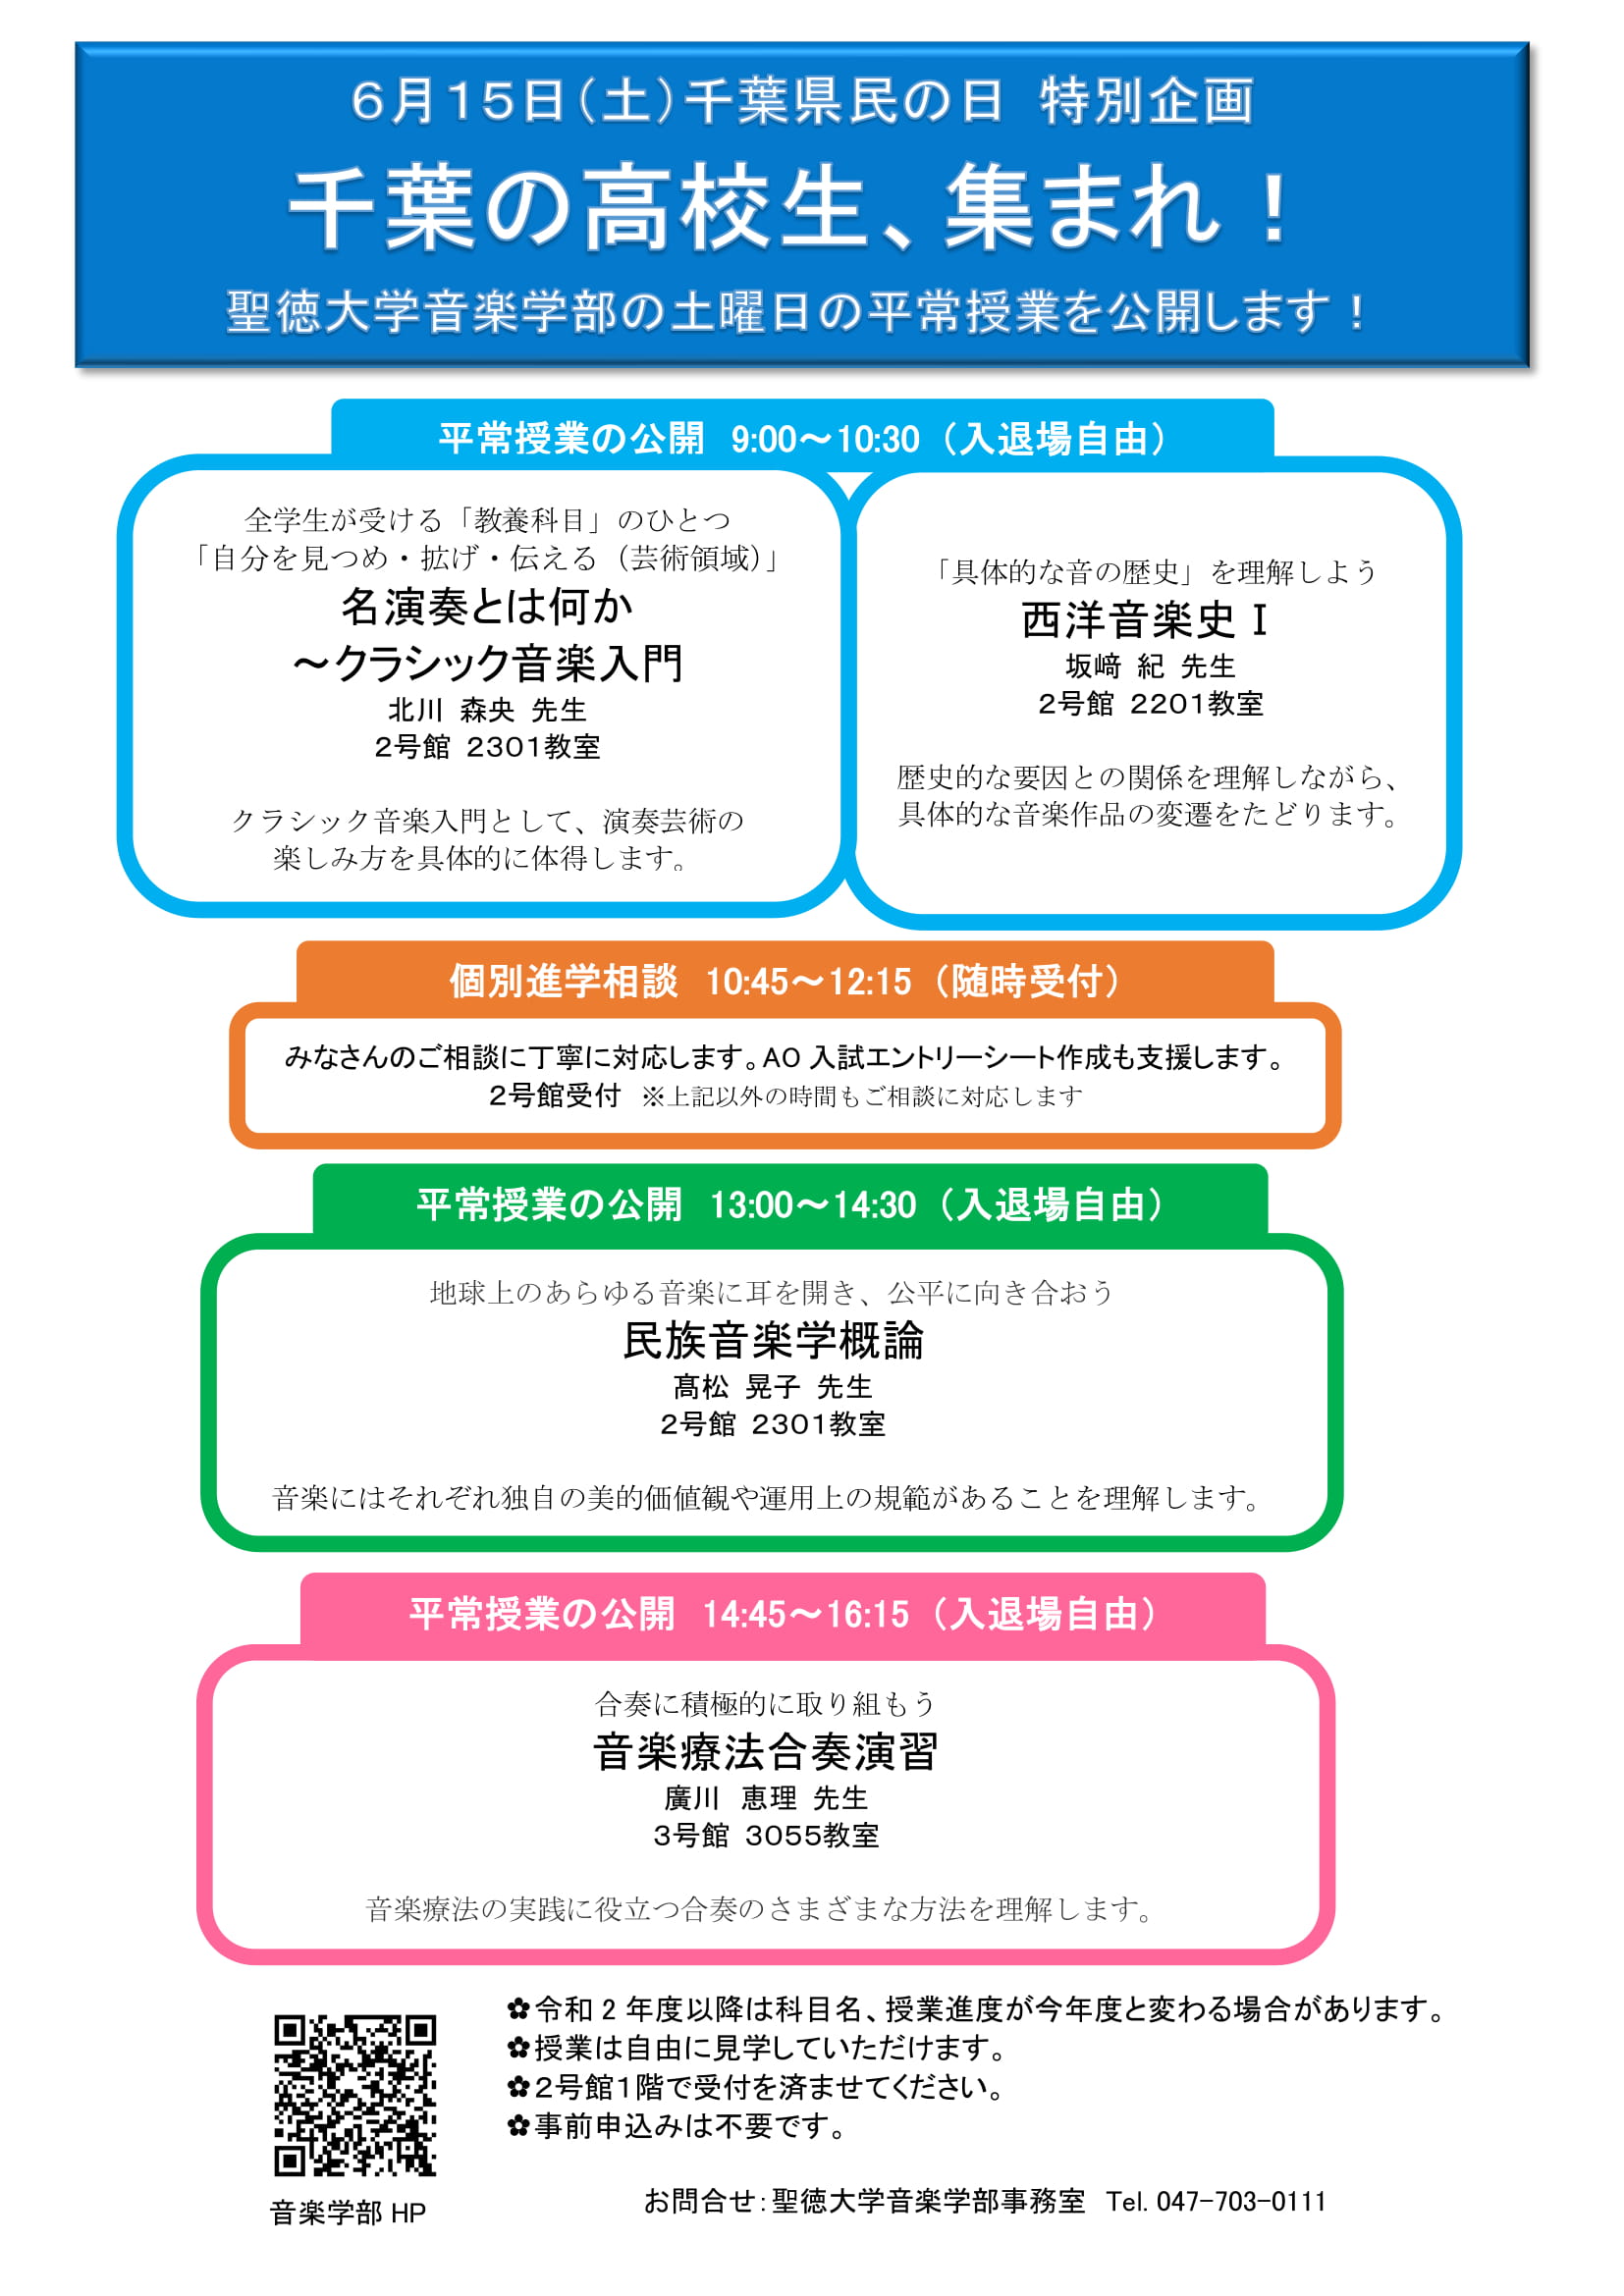 6/15(土) 千葉県民の日、音楽学部の平常授業を公開します